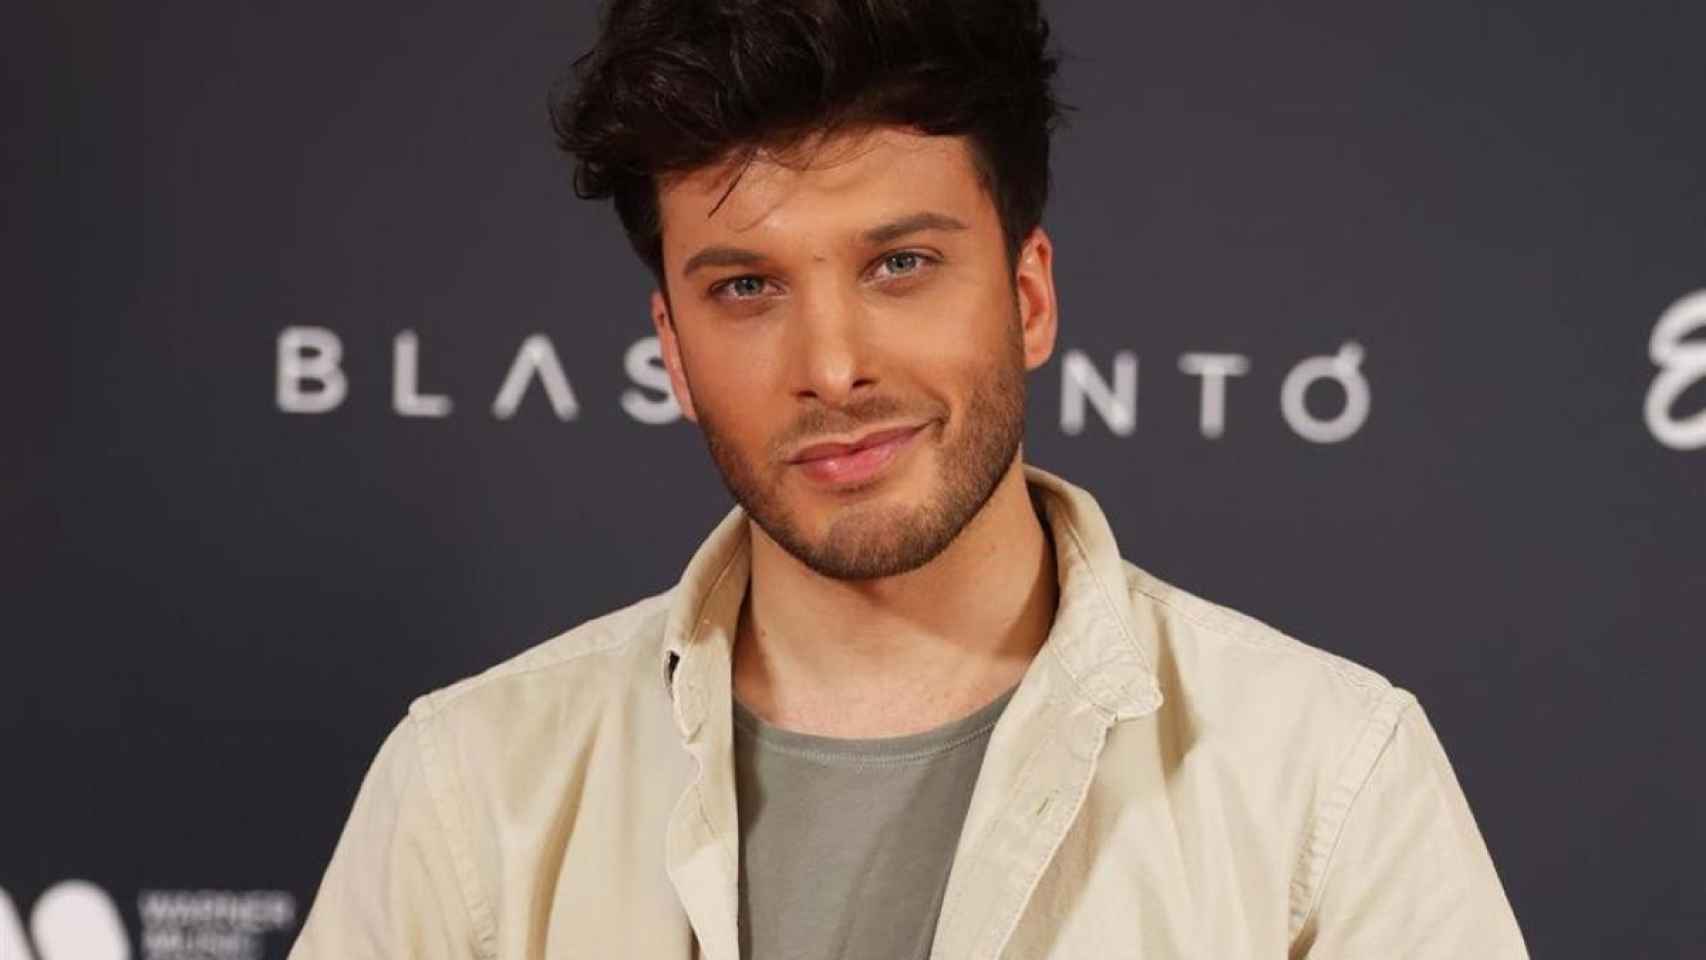 El cantante Blas Cantó, representante de España en el Festival de Eurovisión 2021 / EP